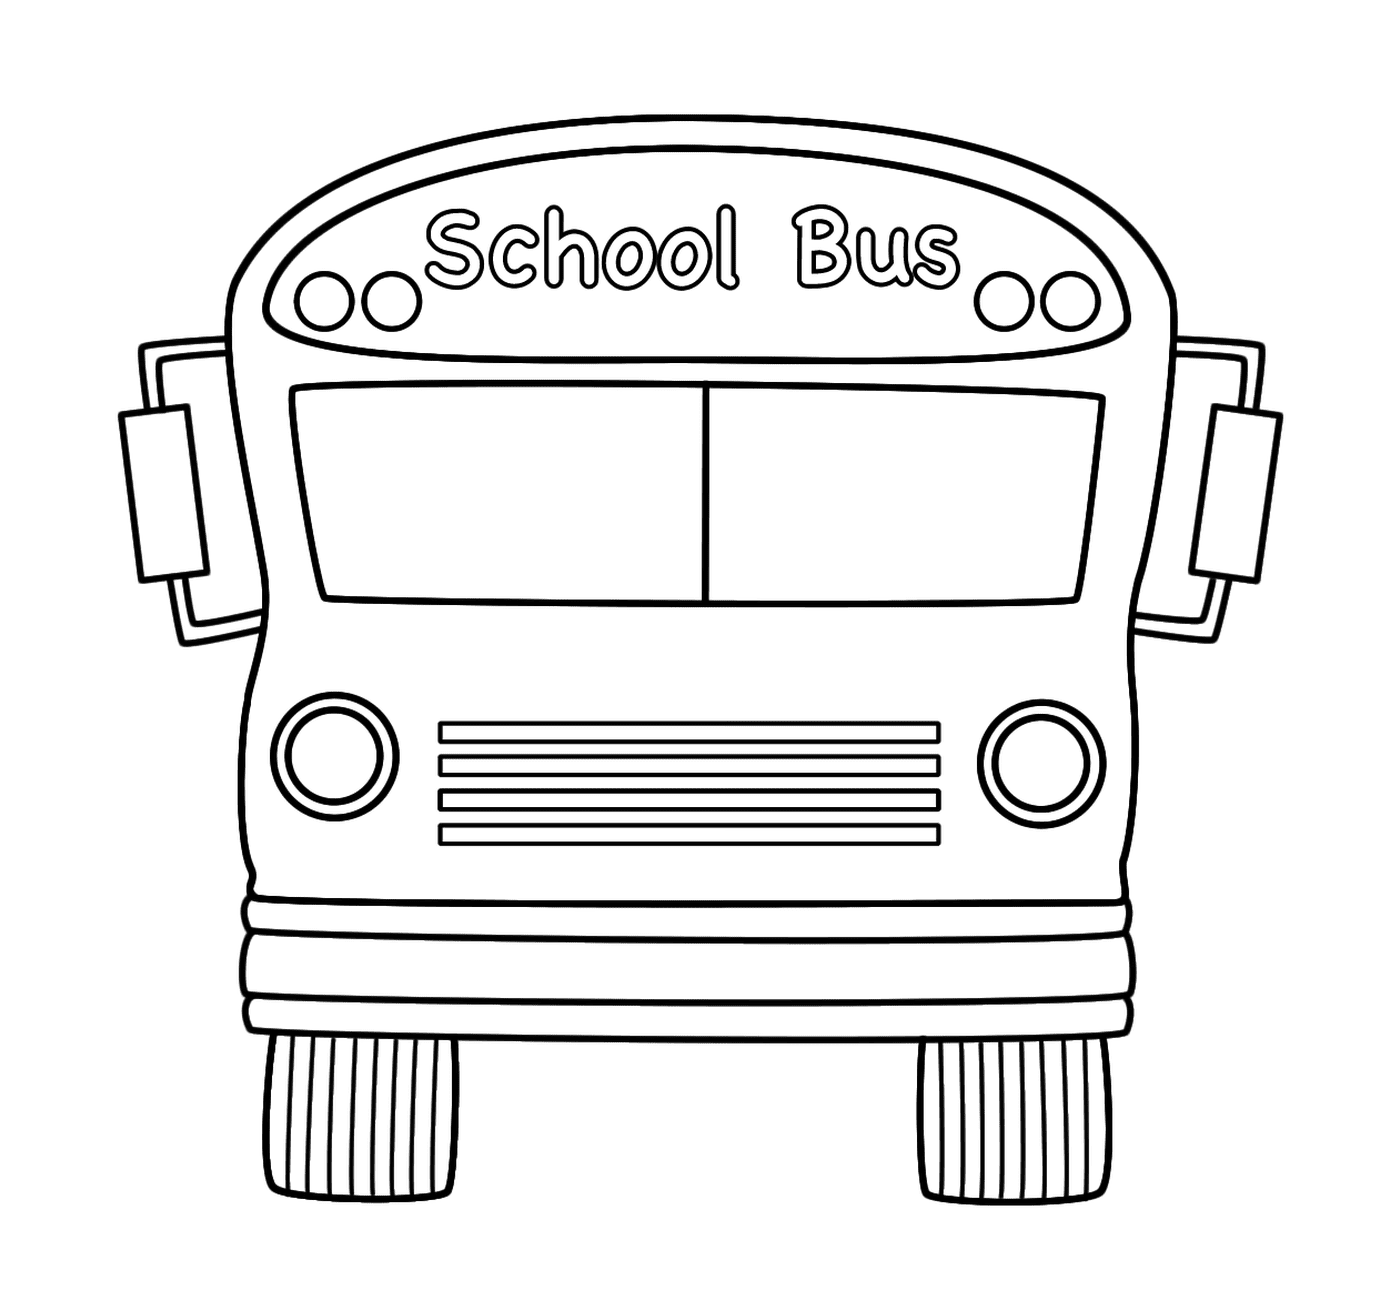  هناك حافلة مدرسية تستعد للمغادرة 